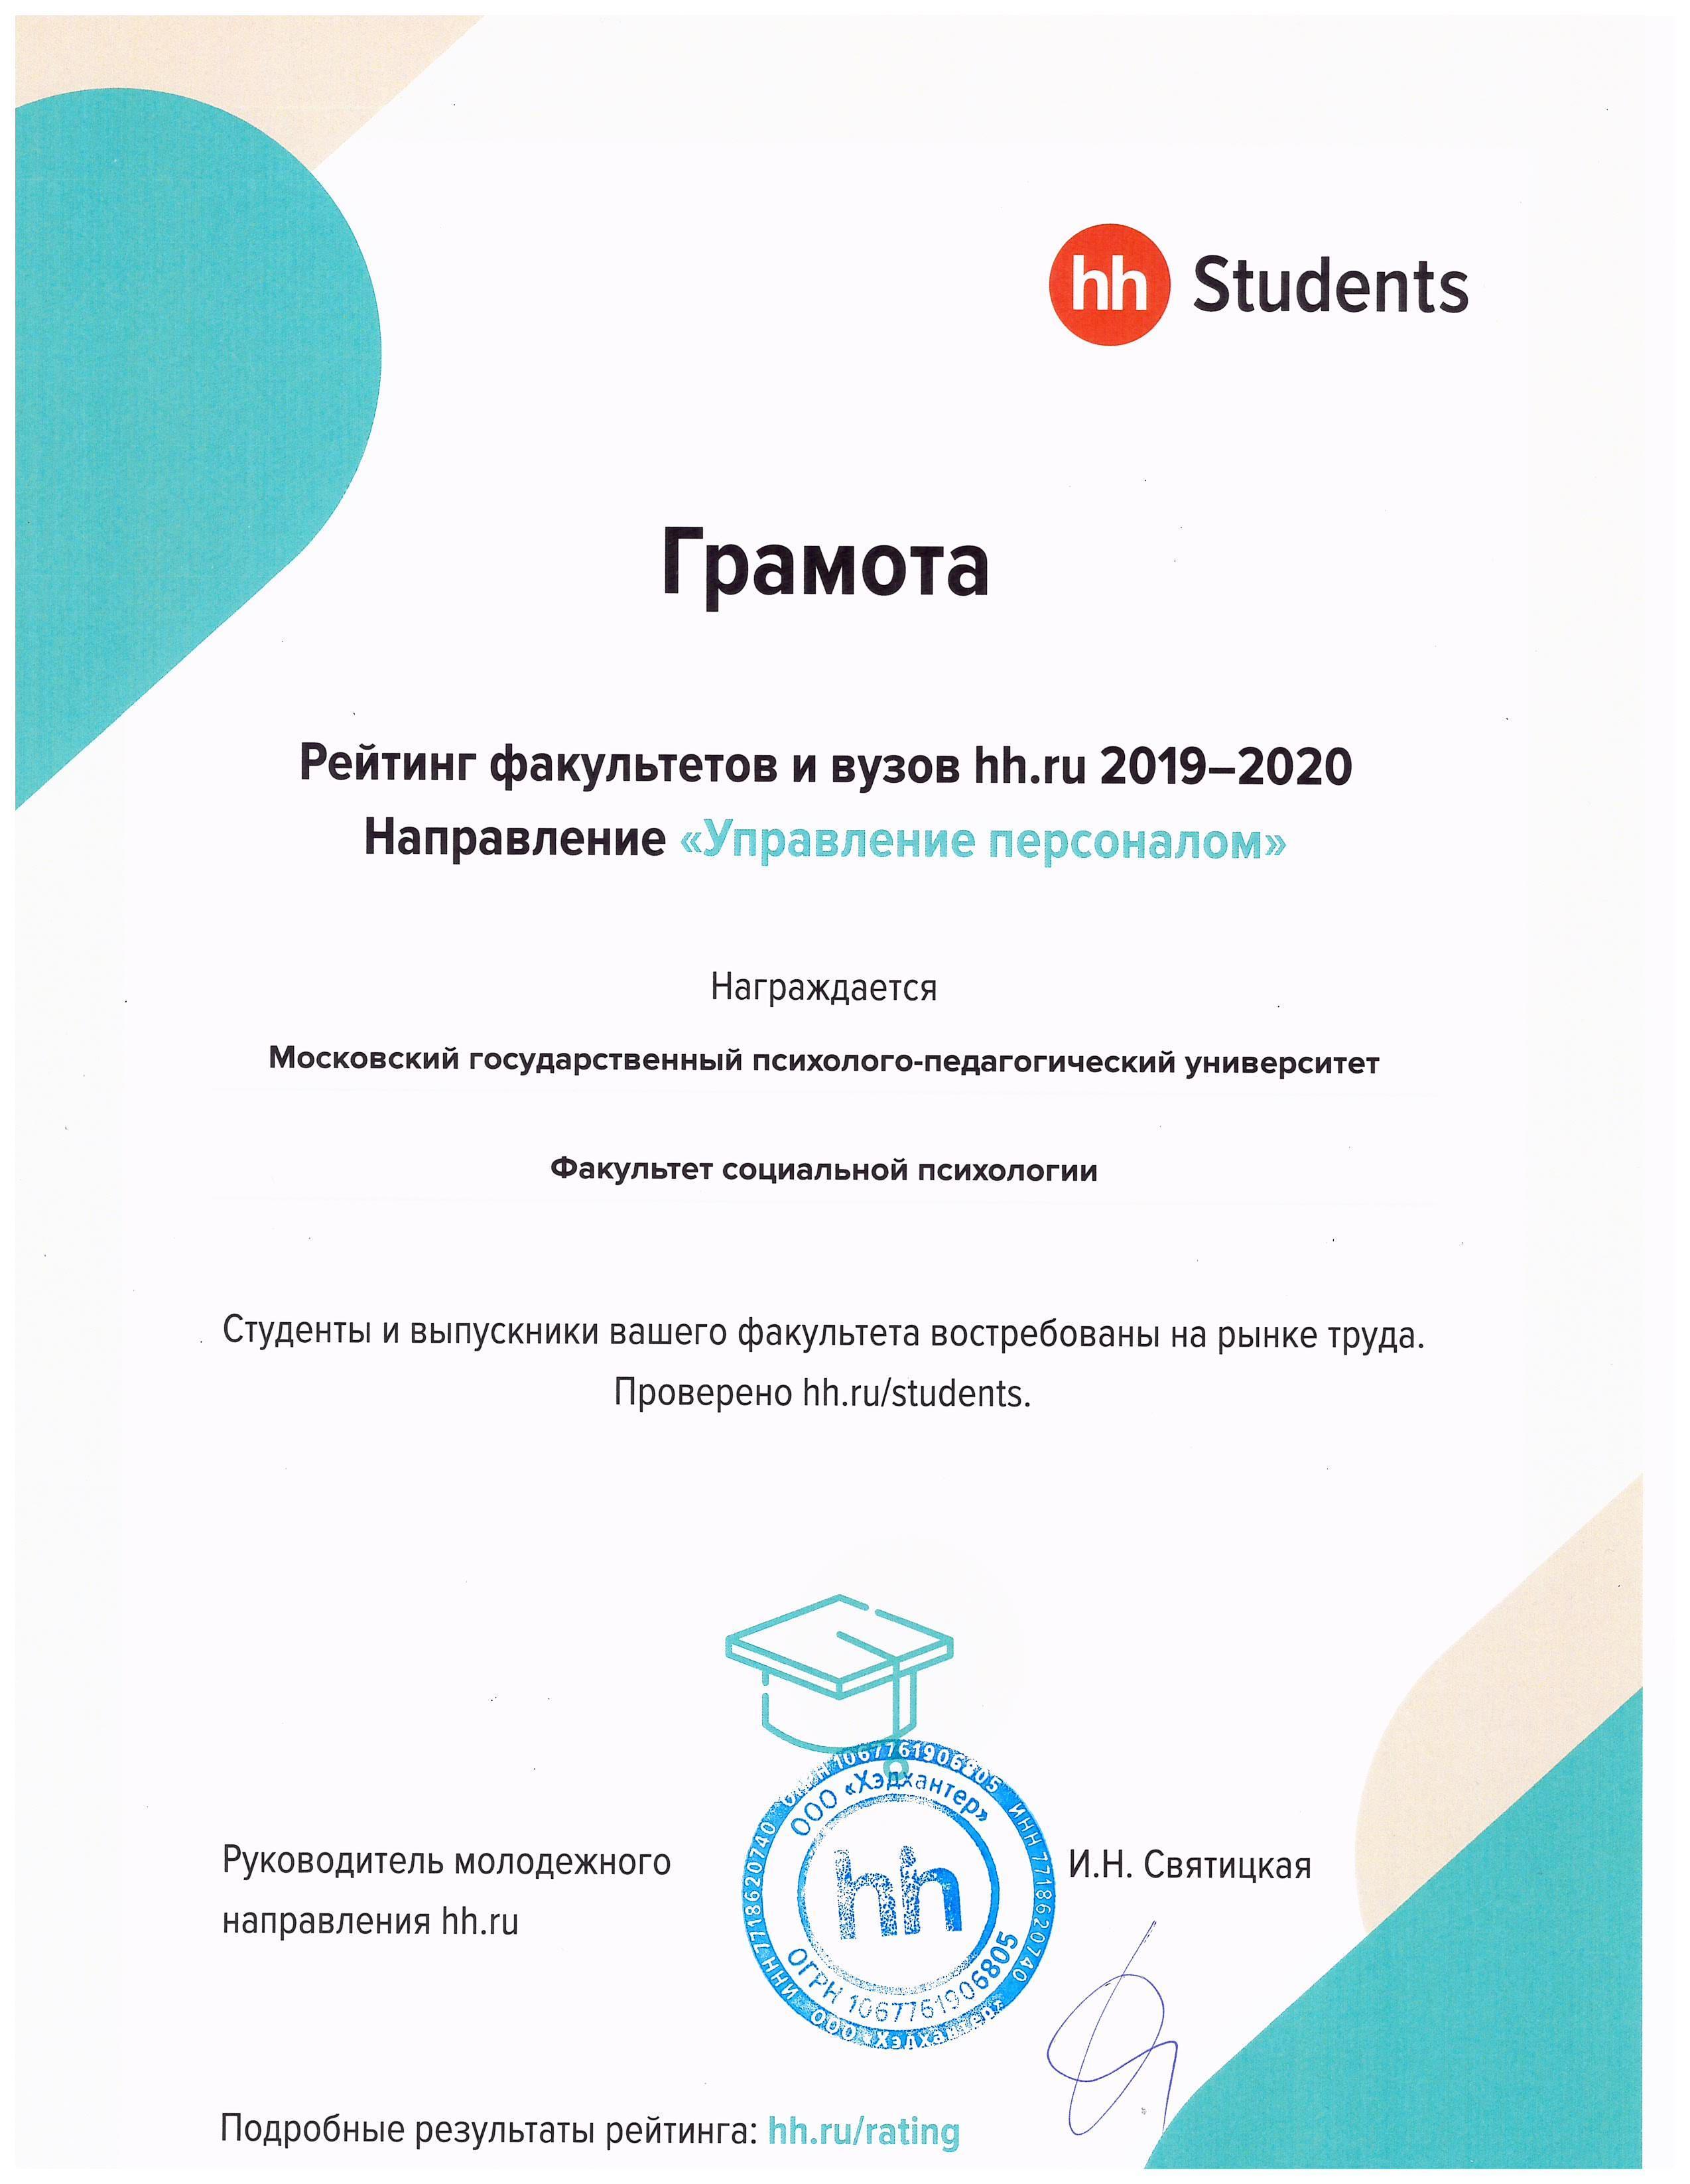 Факультет «Социальная психология» МГППУ награжден грамотой портала hh.ru по направлению «Управление персоналом»